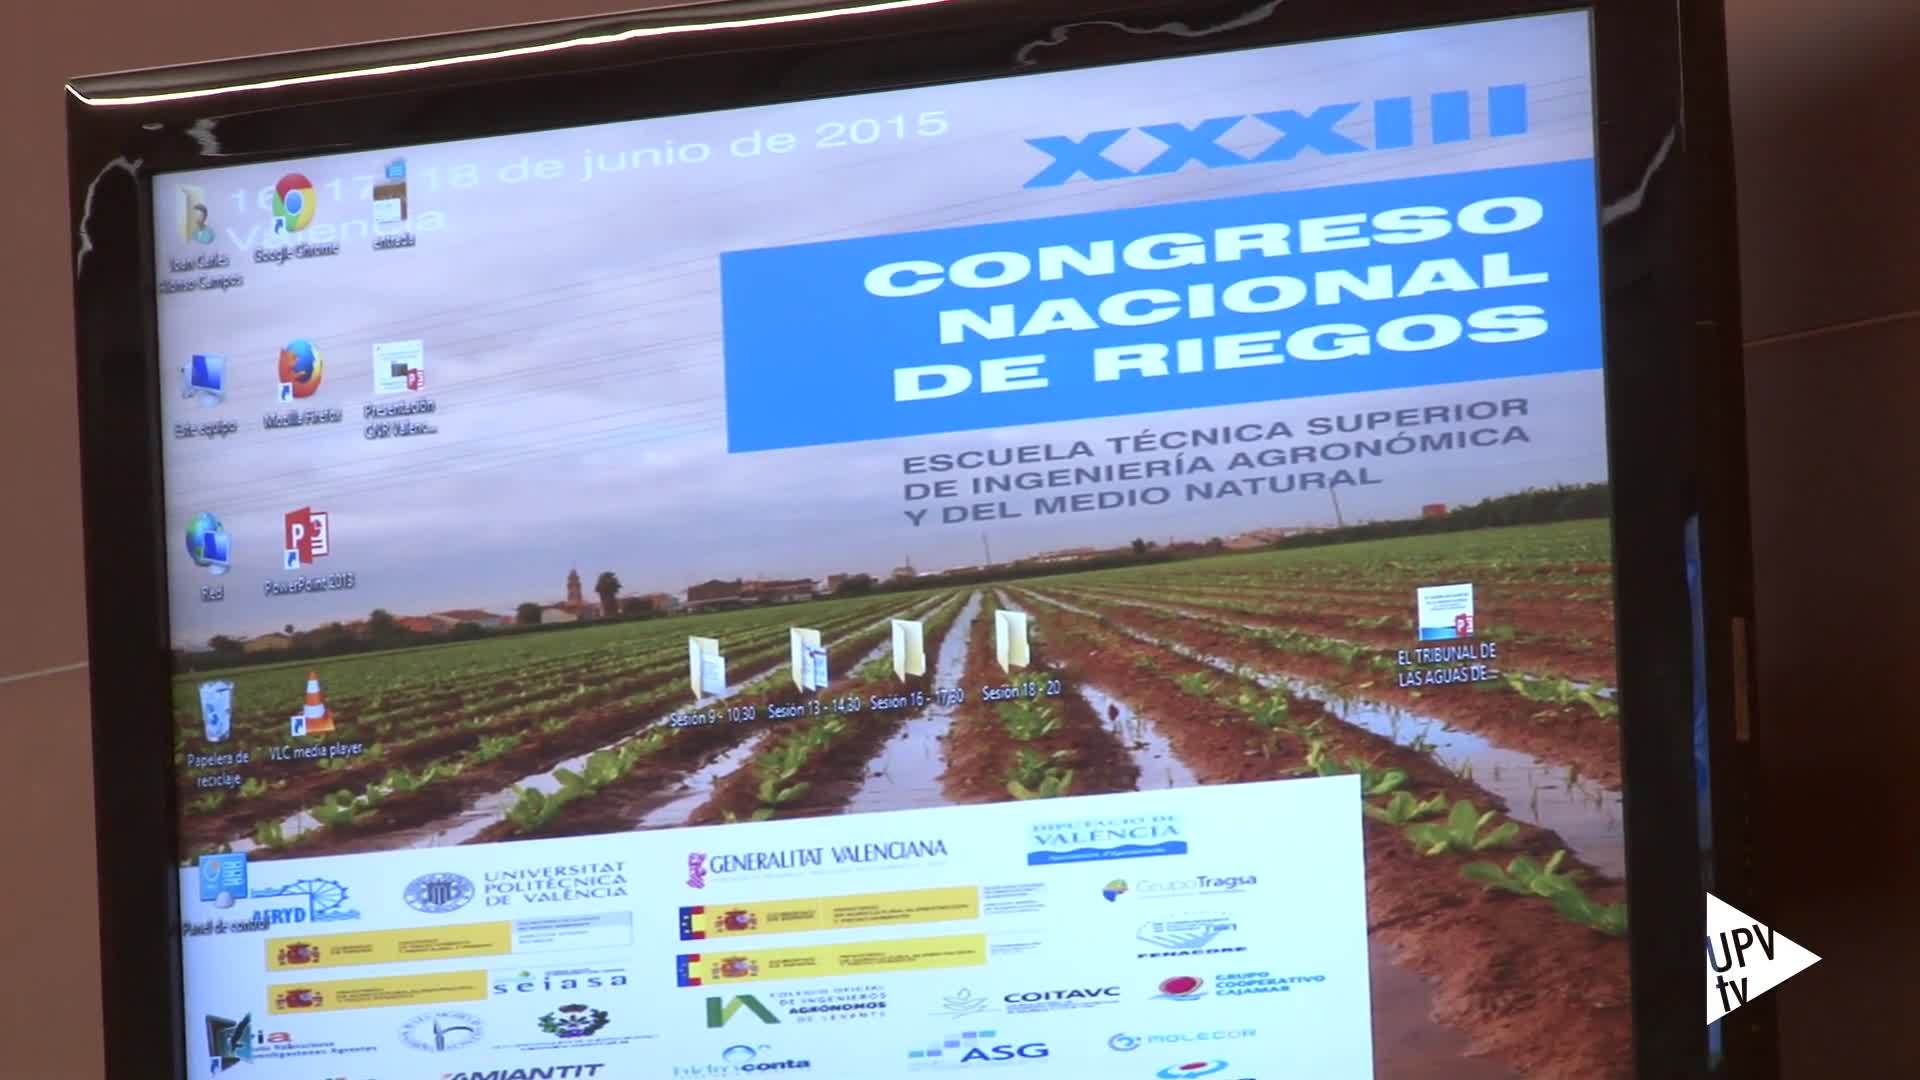 16-06-2015 Congreso Nacional de Riegos